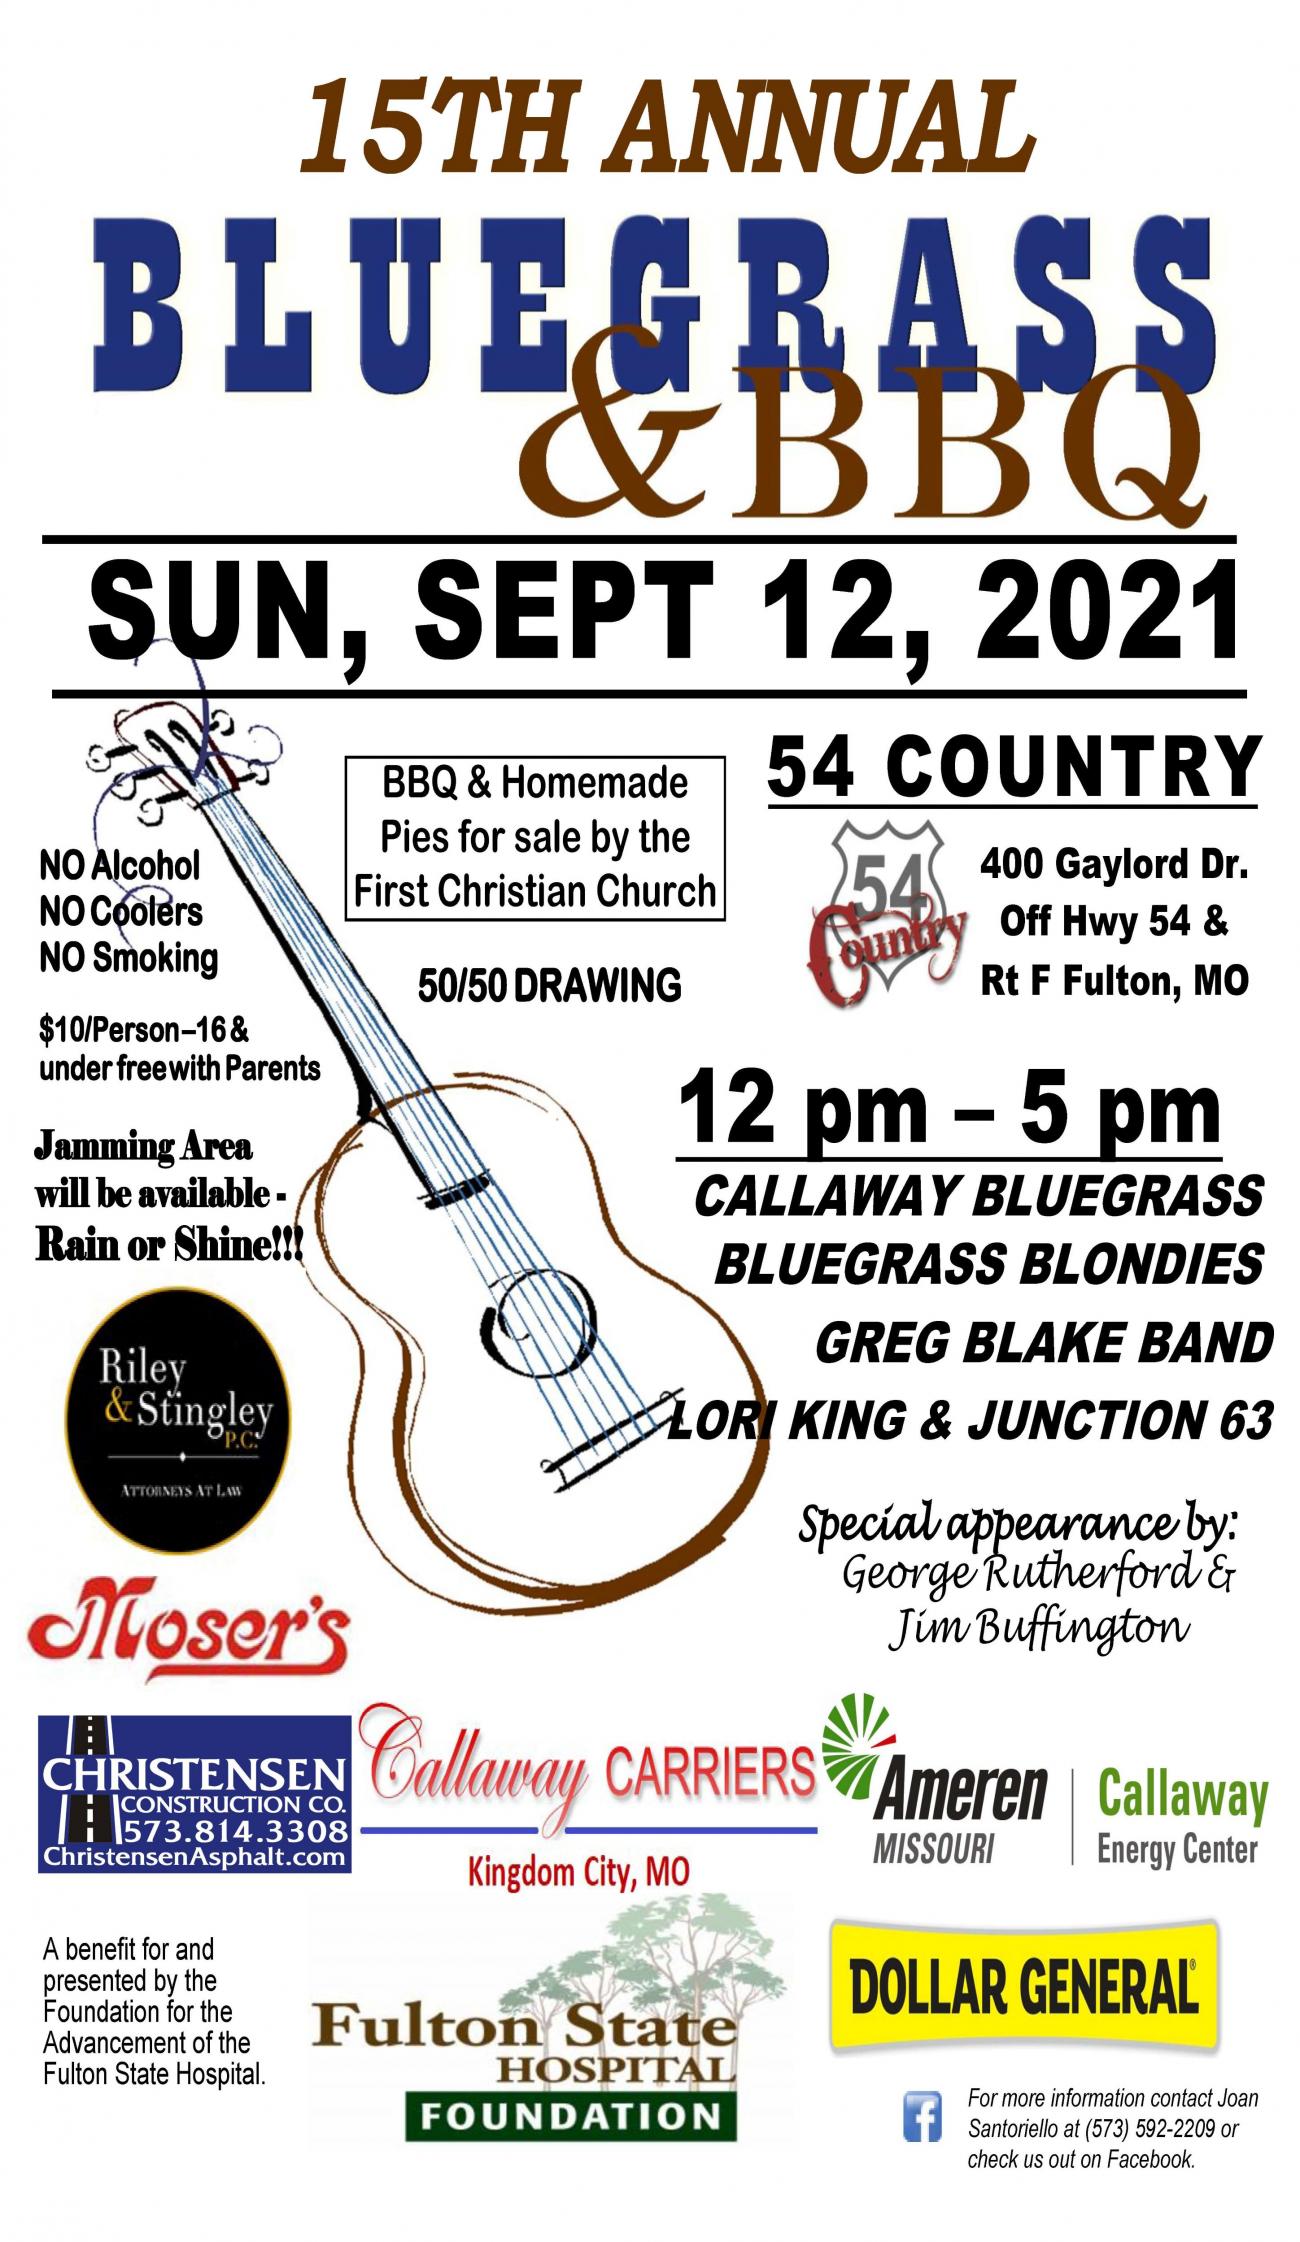 16th annual Bluegrass & Bbq